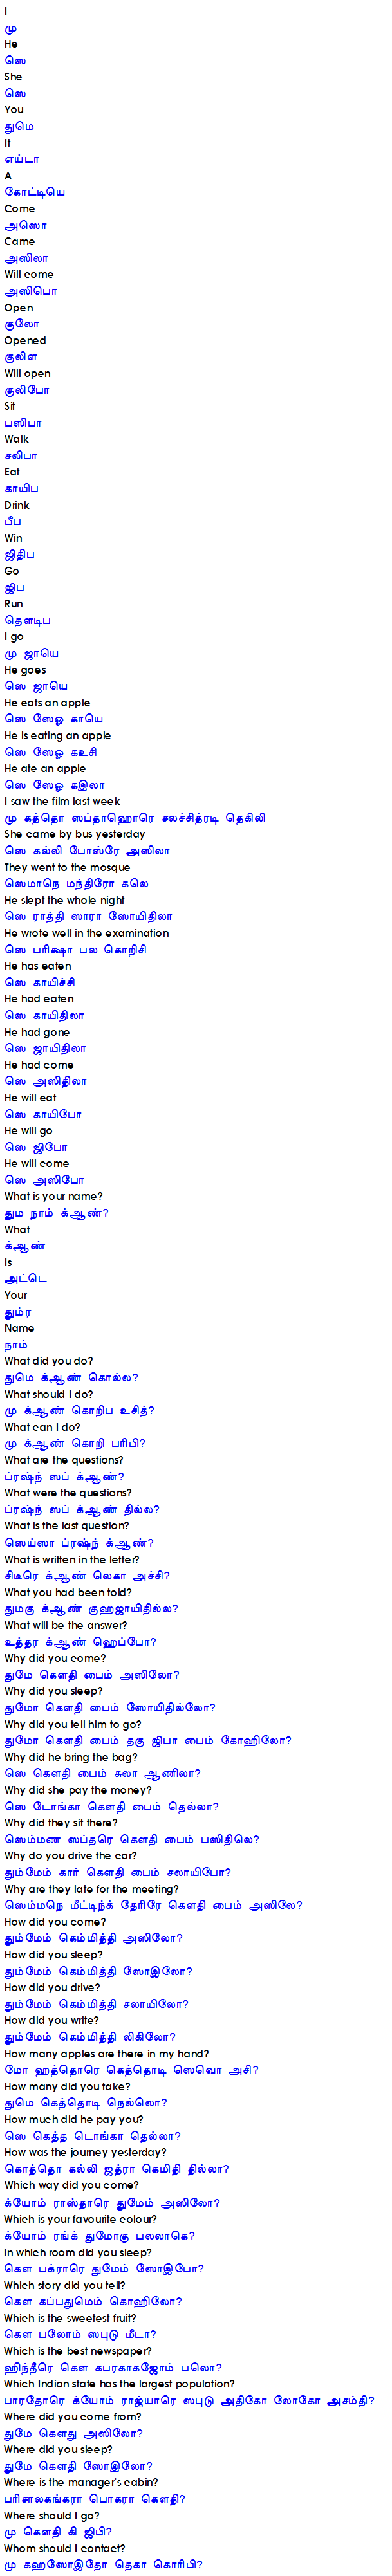 Learn Odia through Tamil (தமிழ் மூலம் ஒடியா